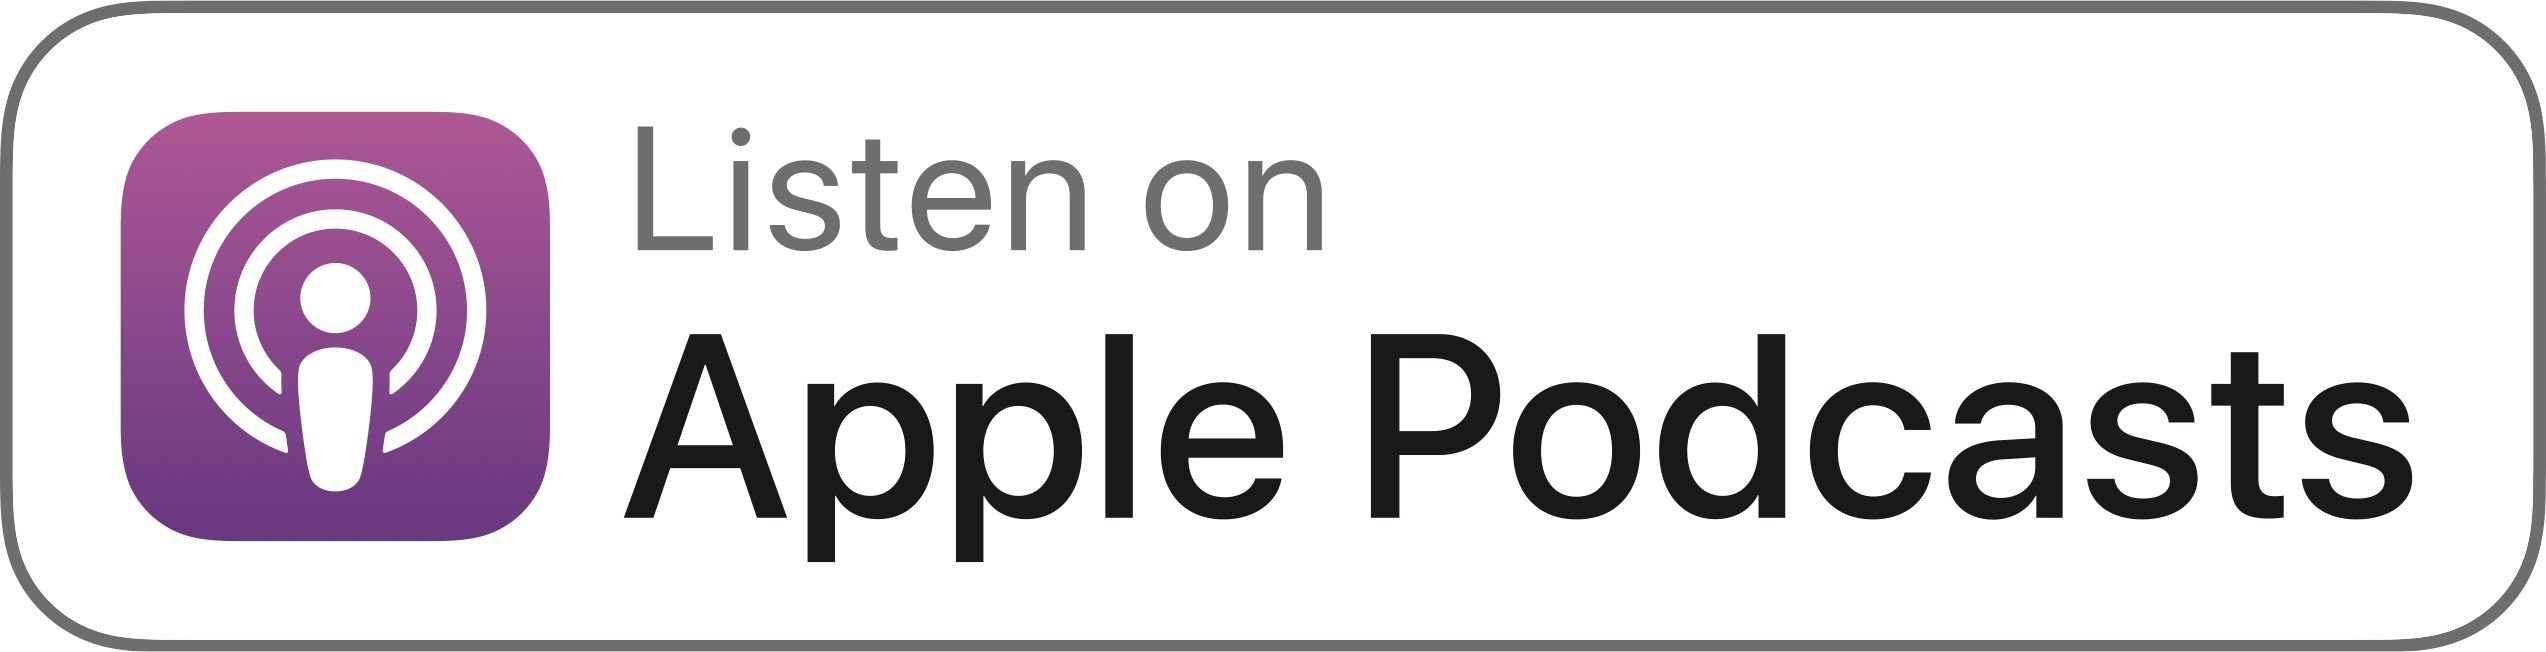 listen-on-apple-podcasts-badge.jpg